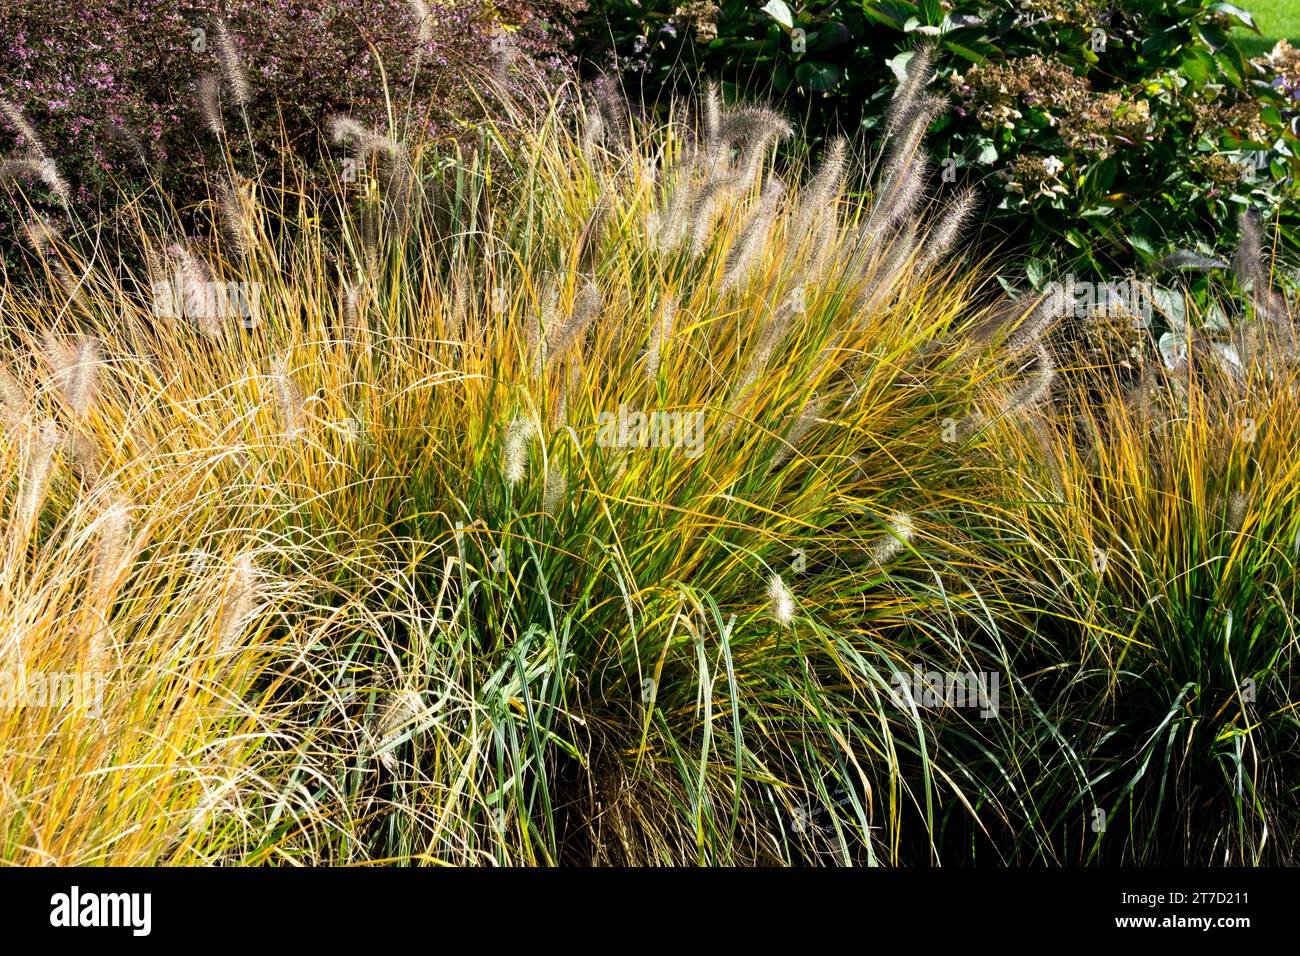 Hardy, Feathertop Fountain Grass, Pennisetum alopecuroides 'Magic' Stock Photo